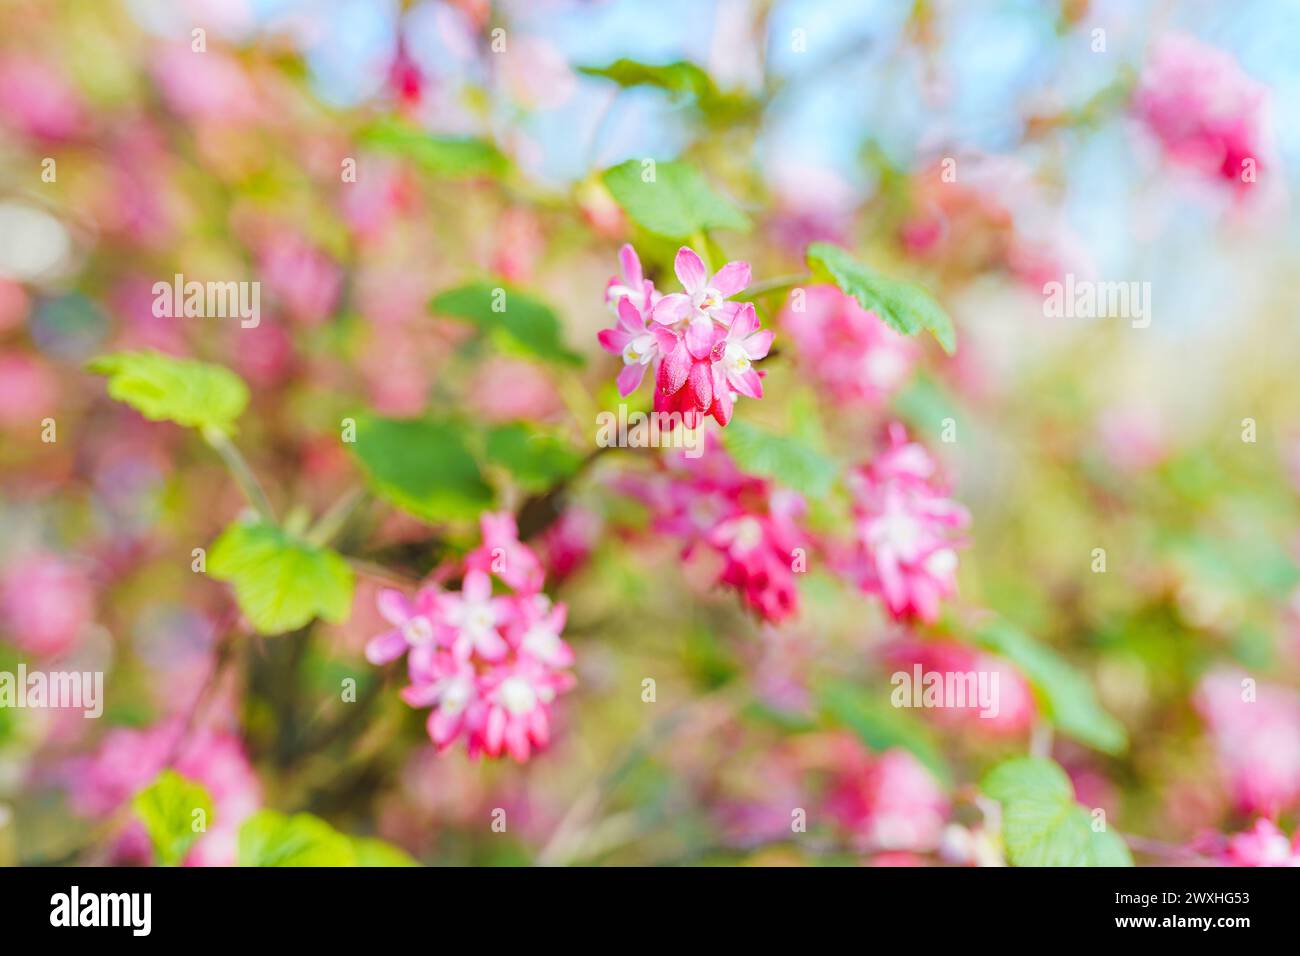 cespuglio con fiori rosa e giardino fiorito in primavera Foto Stock